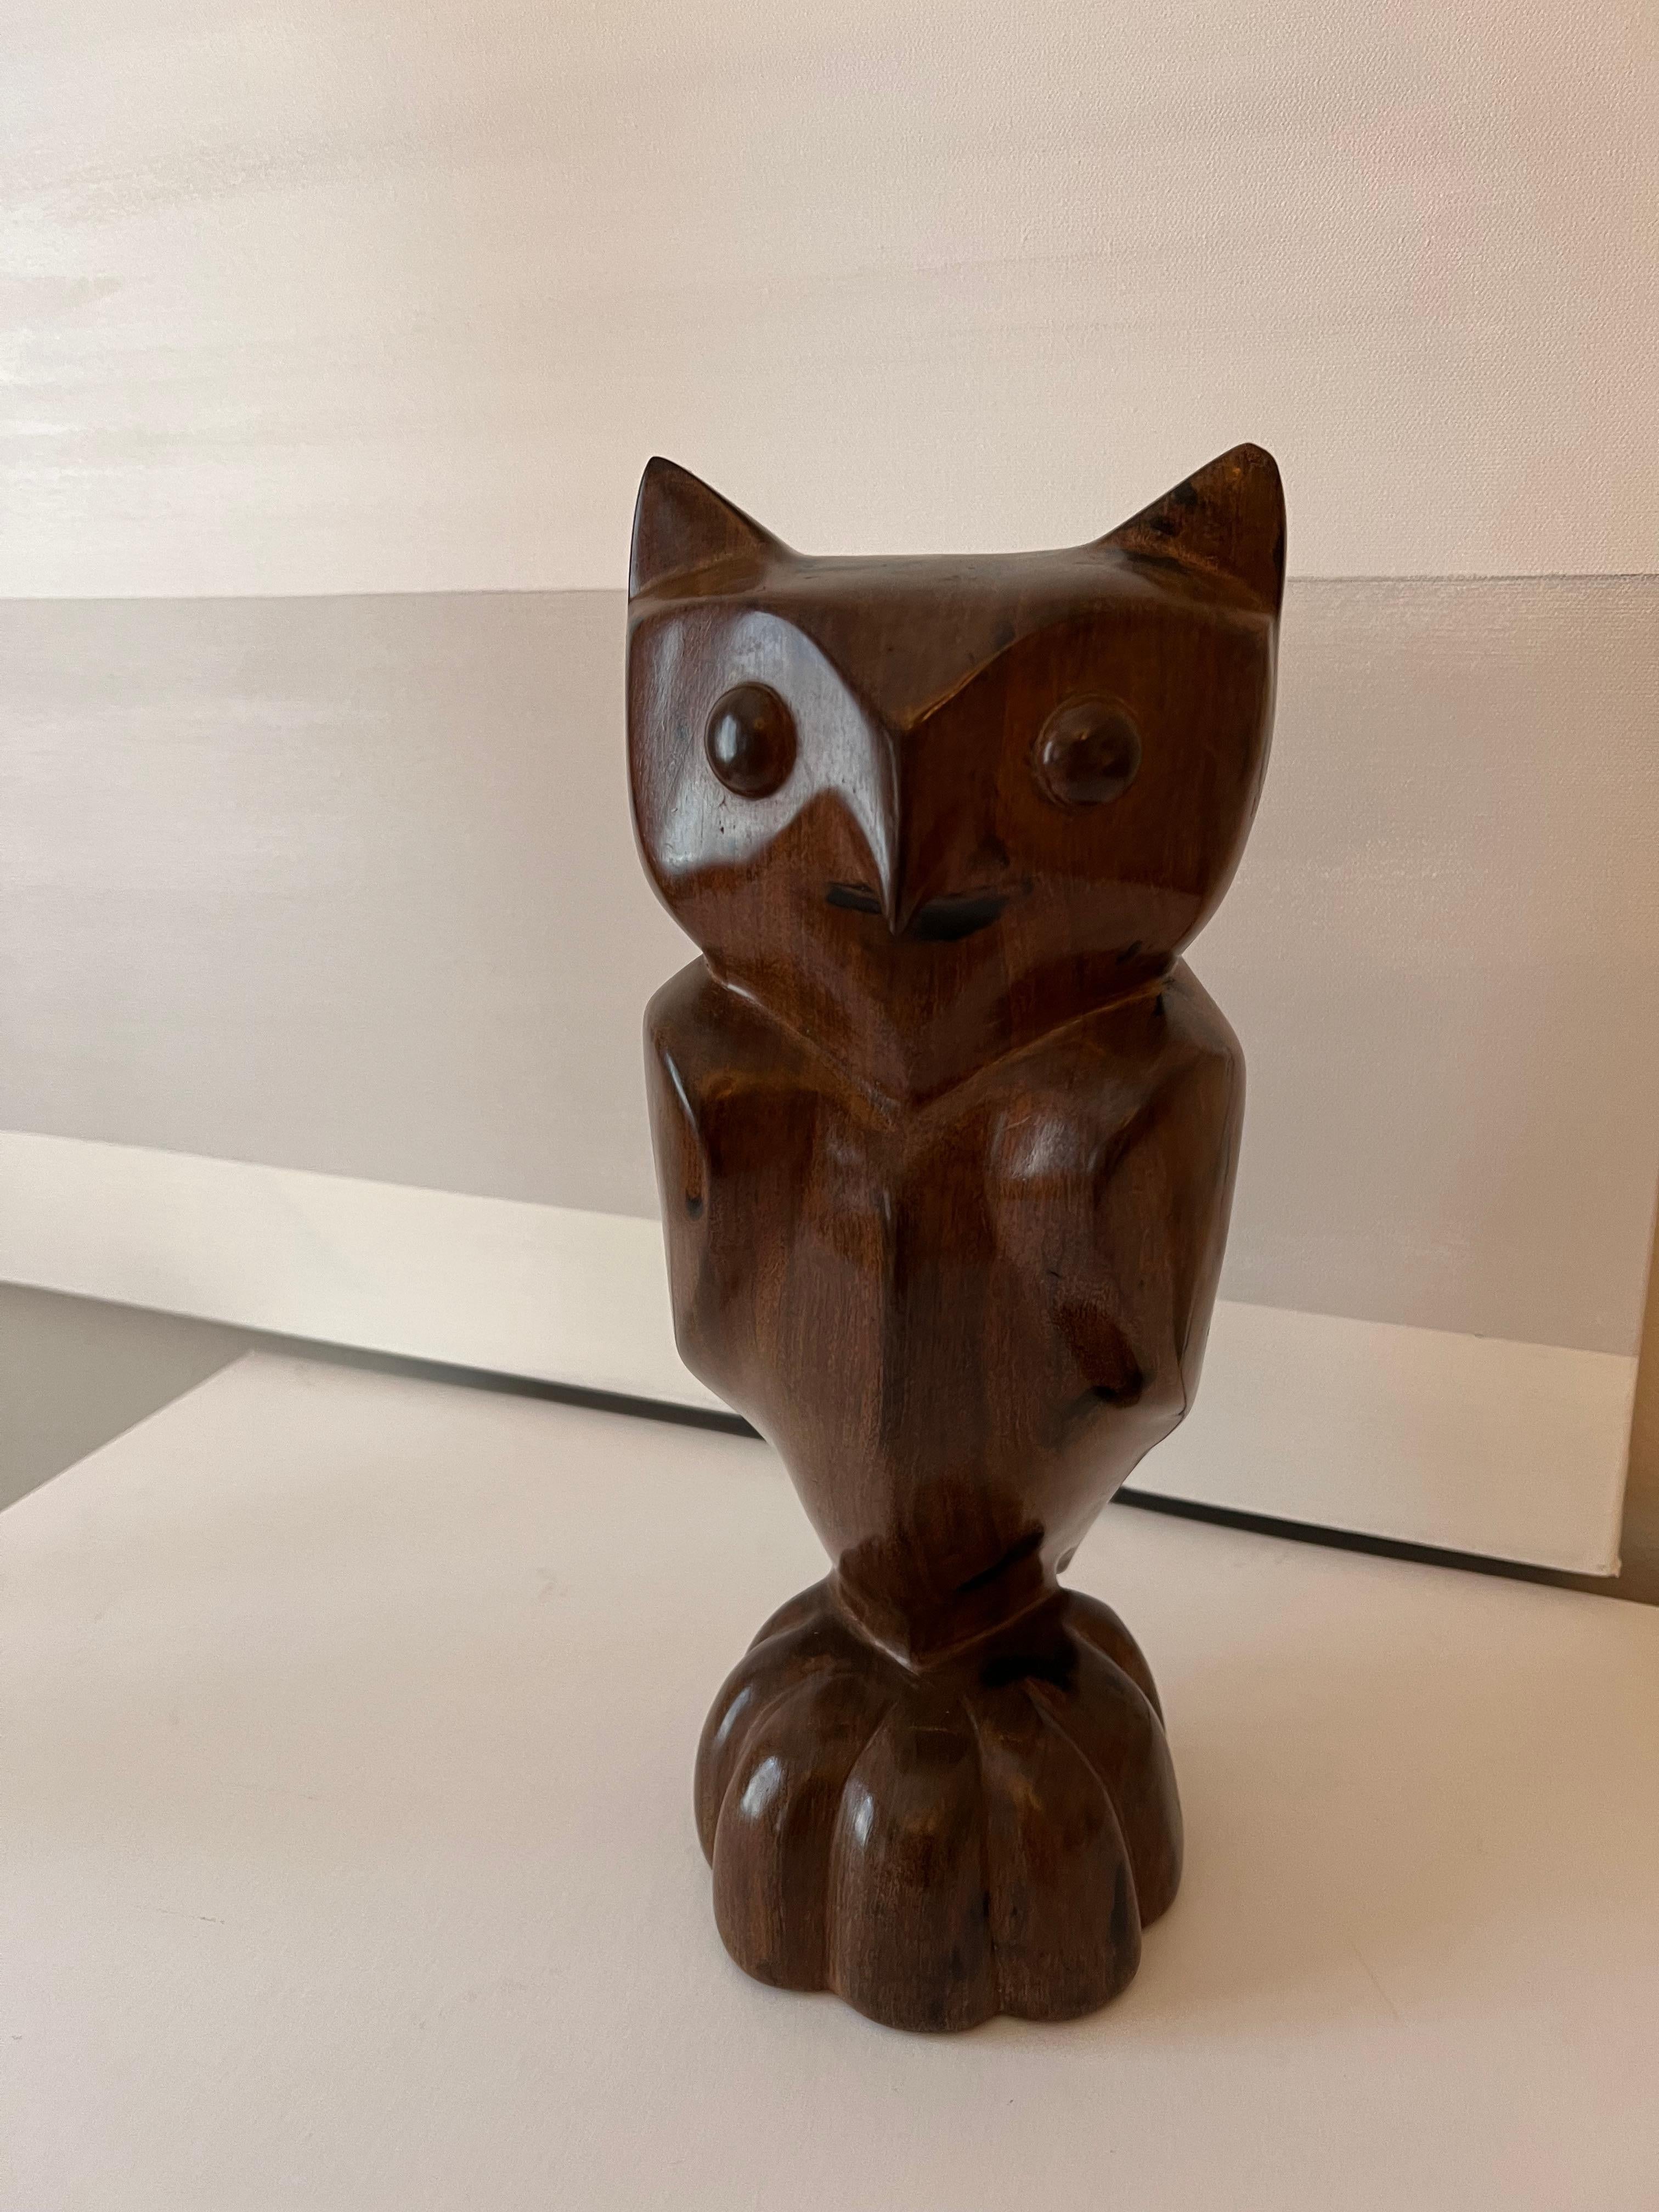 Hand-Carved Carved Wooden Folk Art Owl